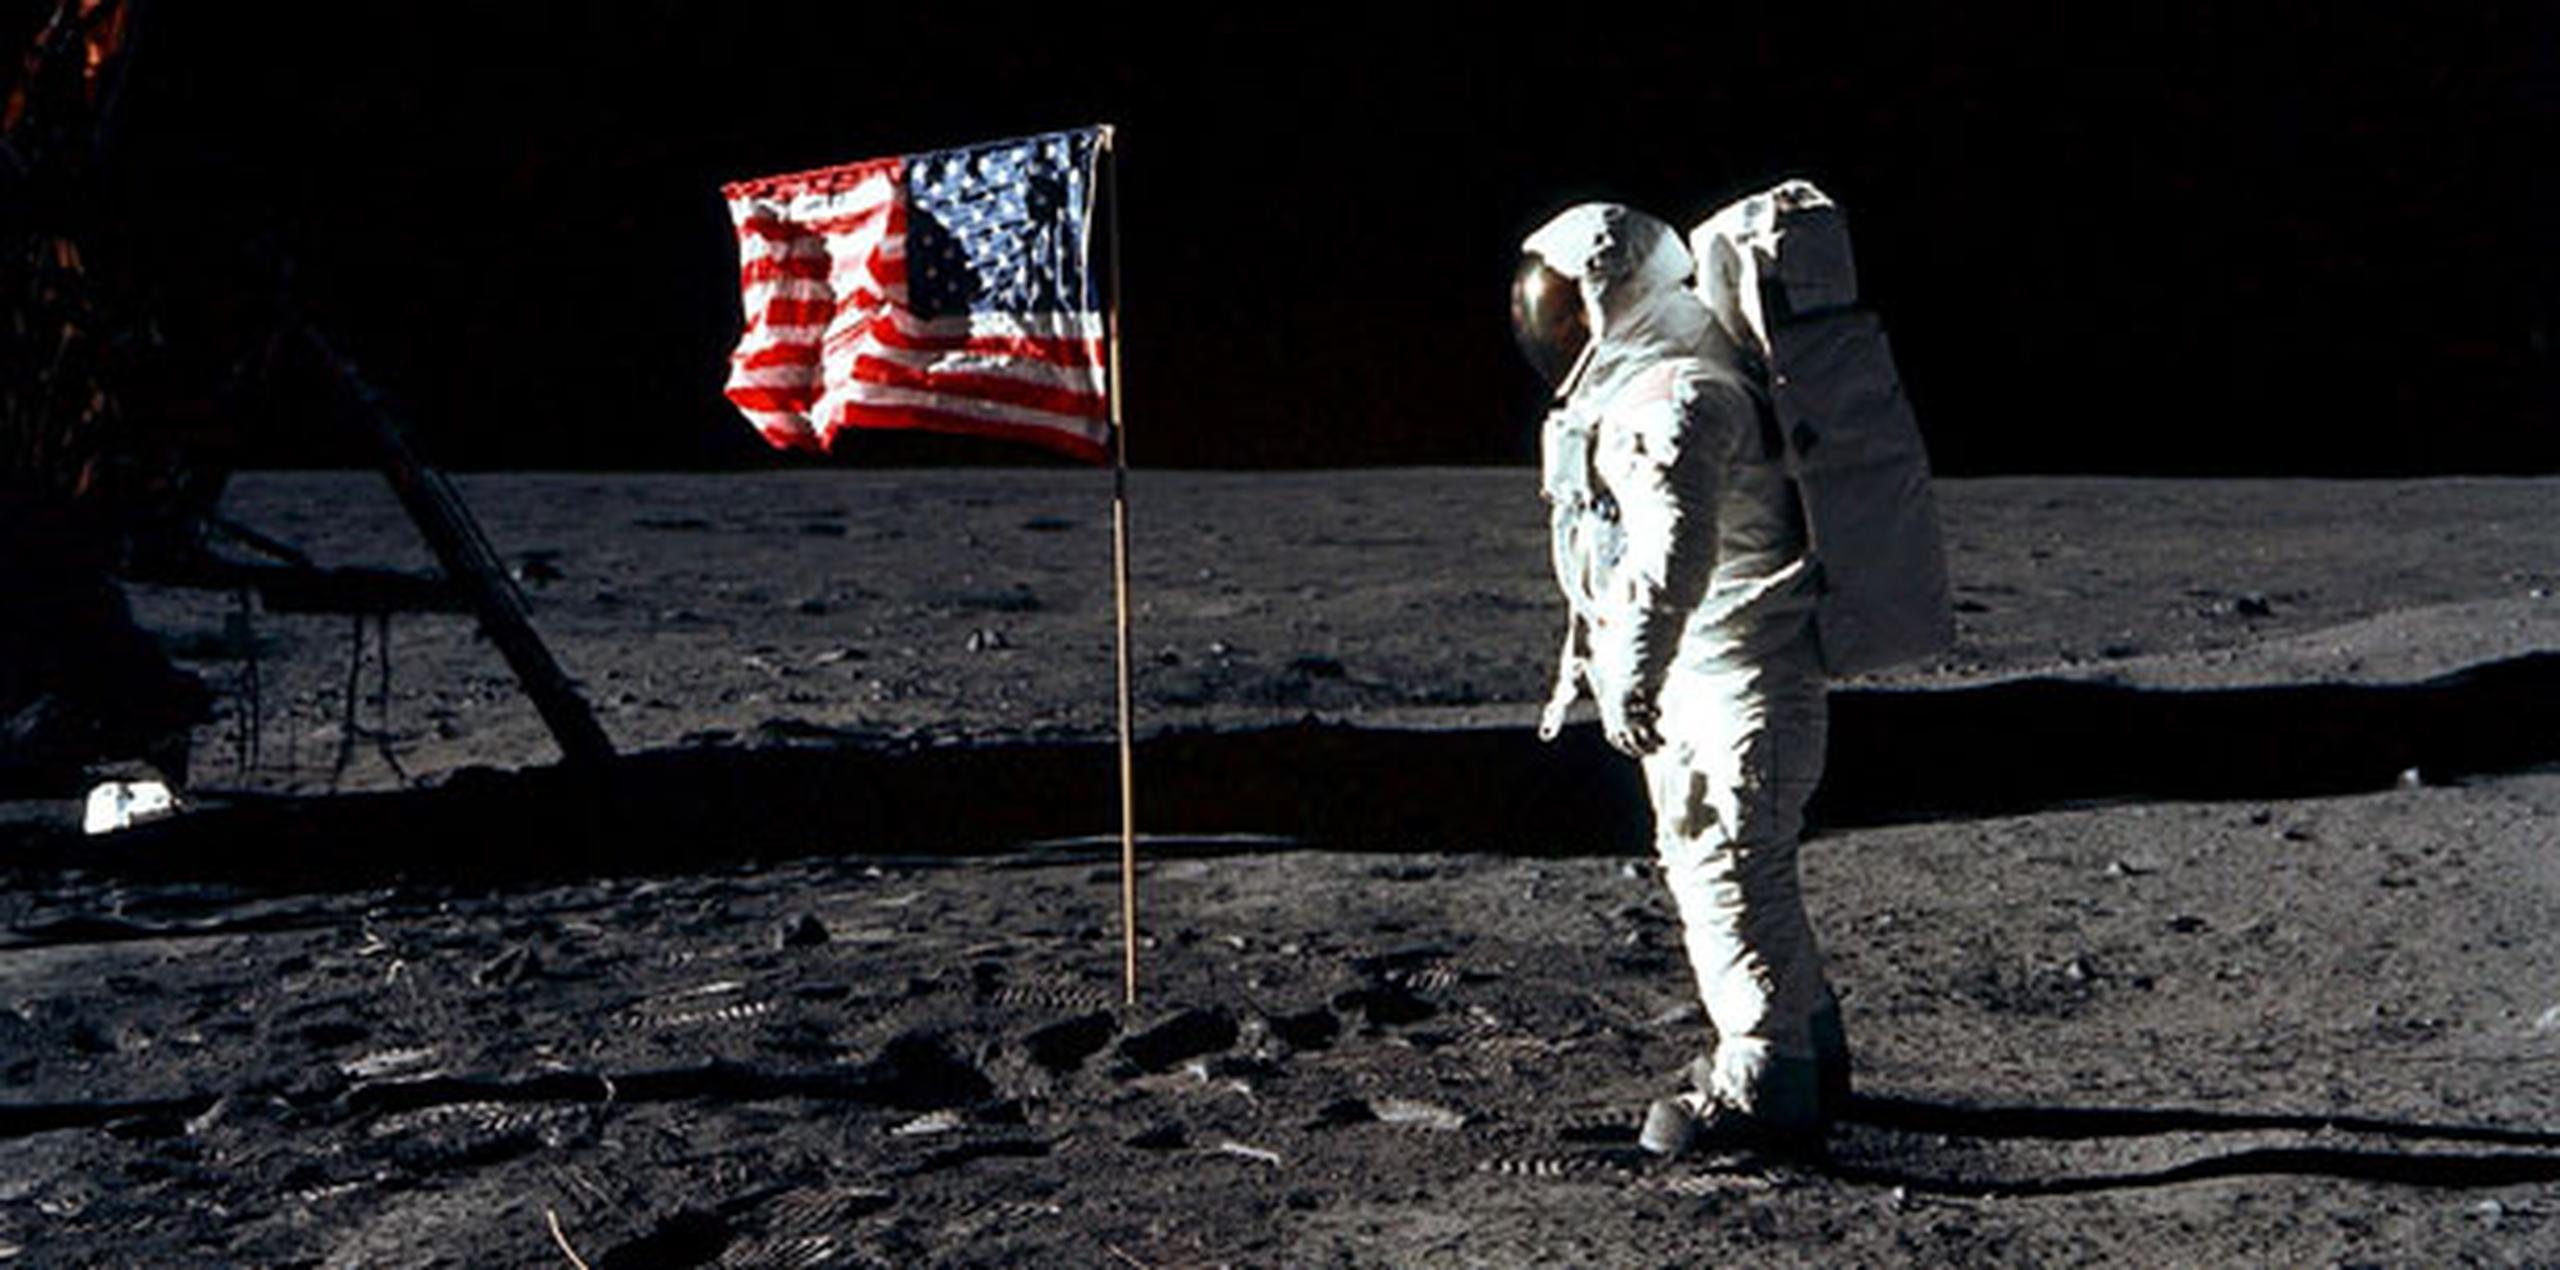 La imagen del símbolo nacional en la desolada superficie lunar se convirtió en un icono de la cultura americana. (Archivo)